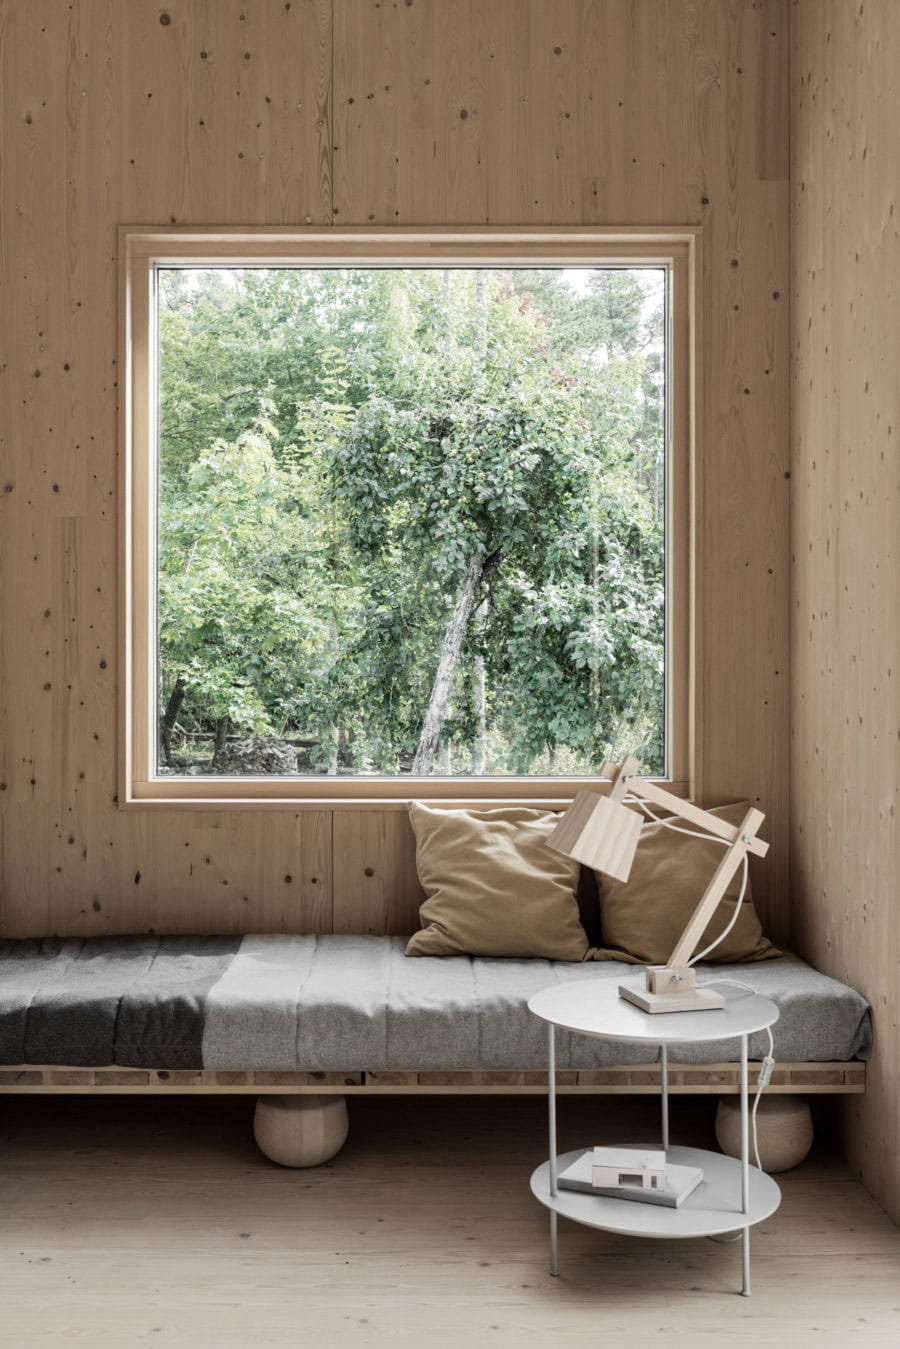 Gotland Summer House Of Gabriella Gustafson from TAF Design Studio